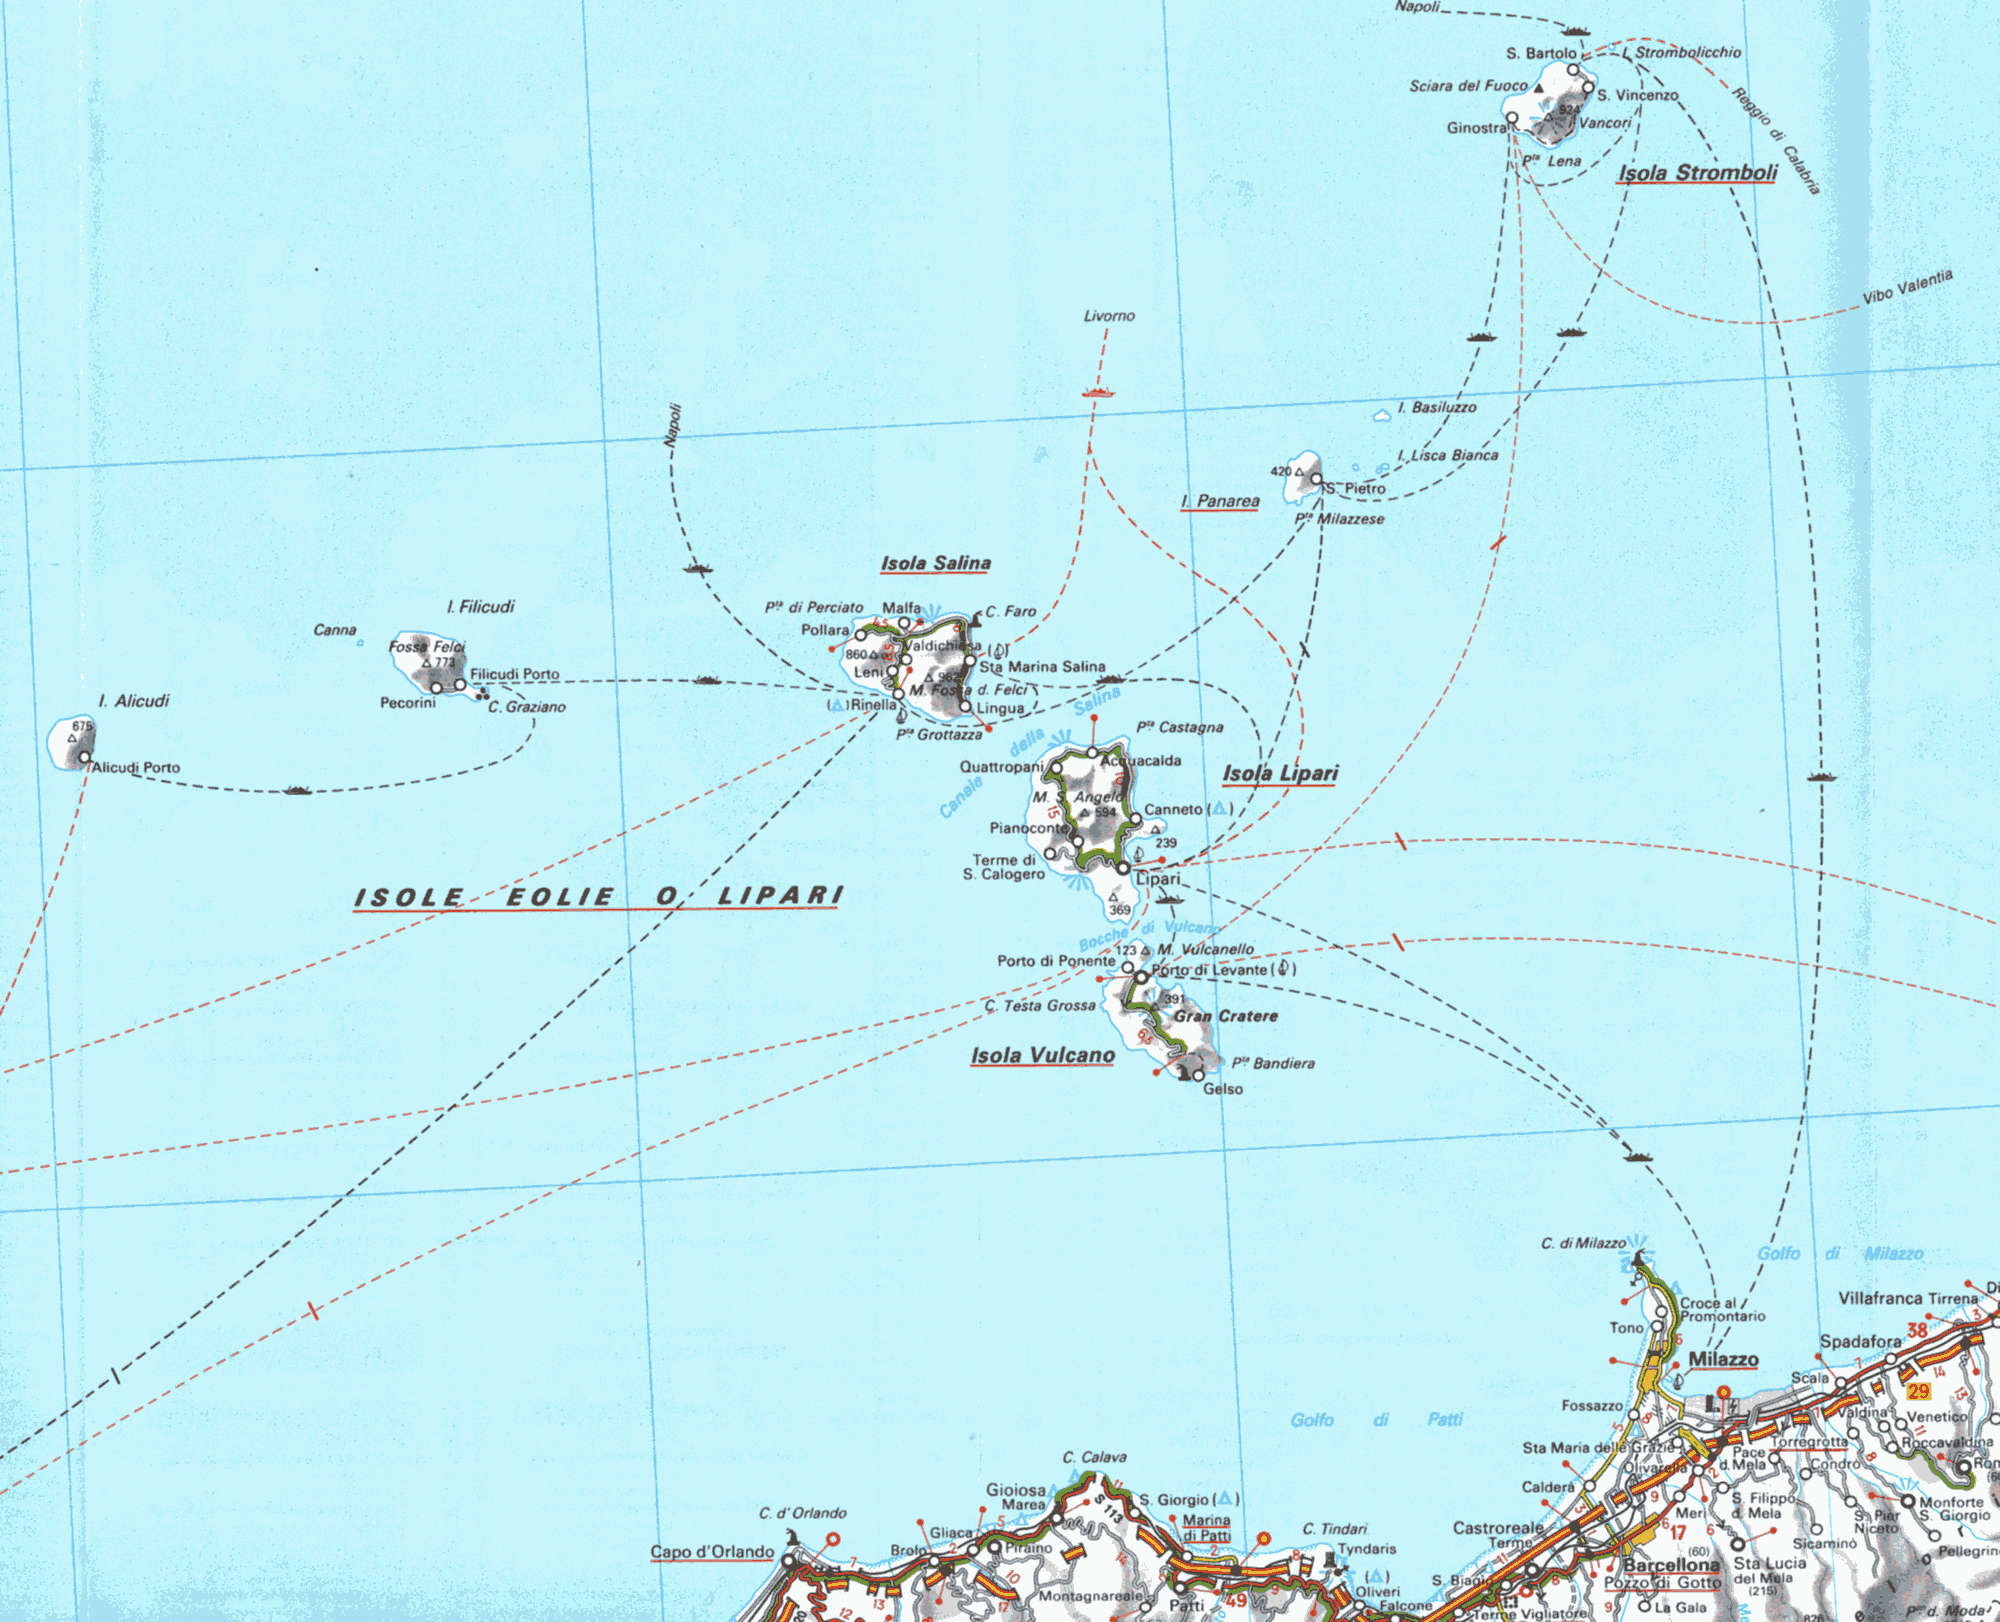 Mappa delle Isole Eolie - Lipari, Alicudi, Filicudi, Stromboli, Vulcano, Panarea